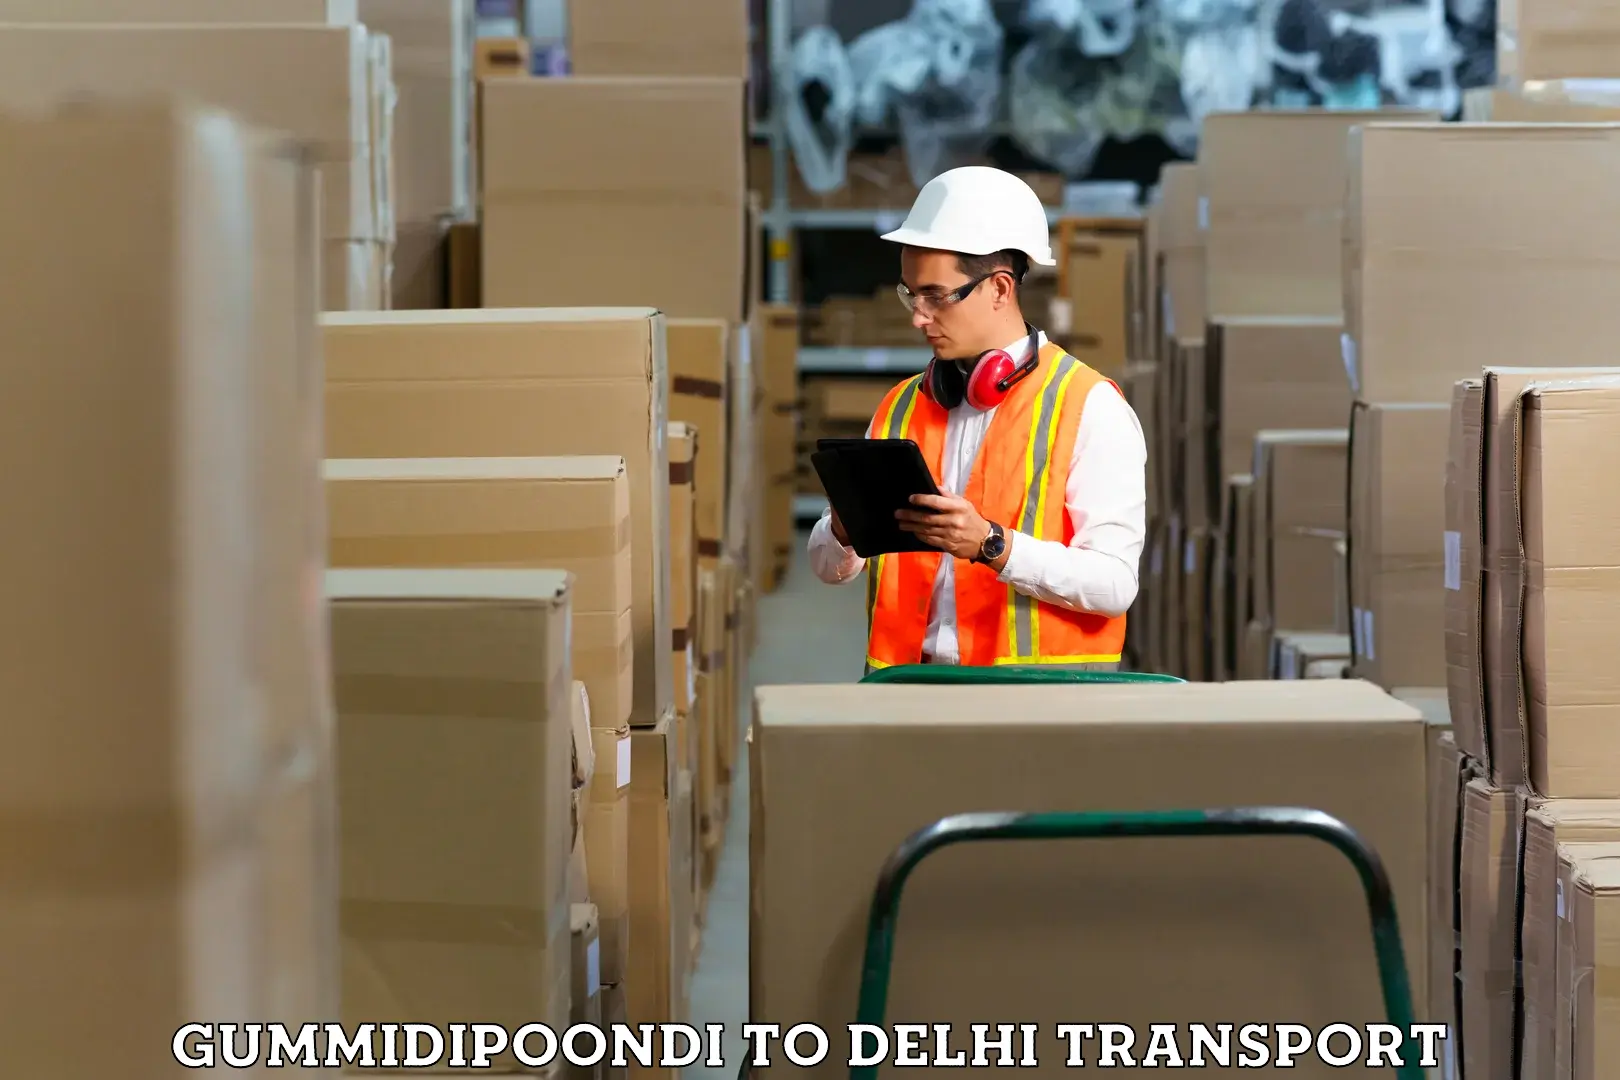 Two wheeler transport services Gummidipoondi to NIT Delhi